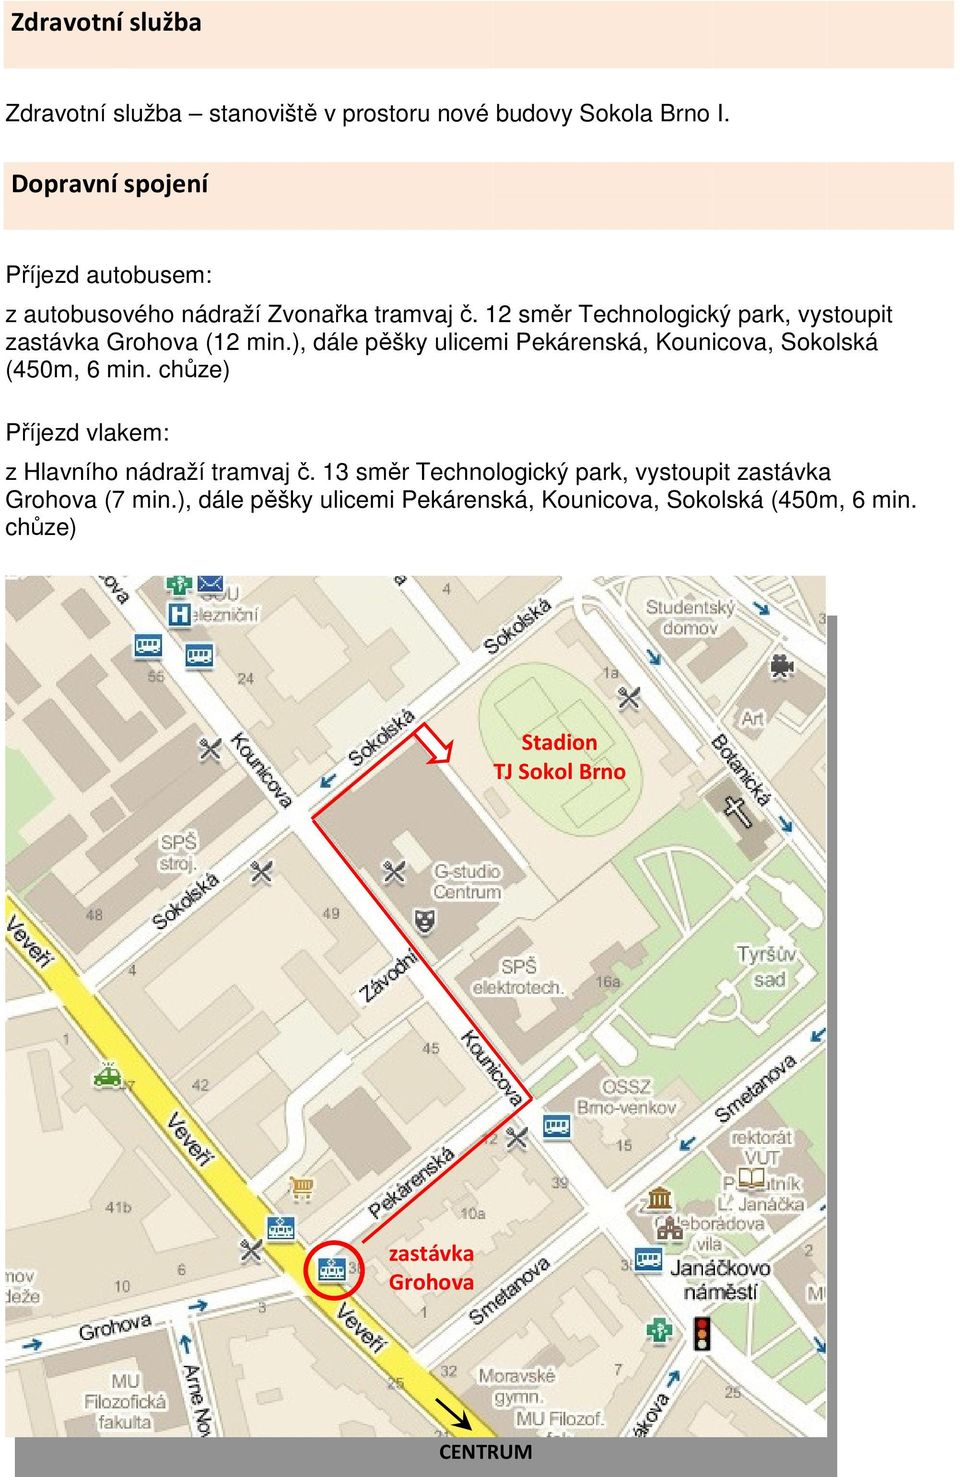 12 směr Technologický park, vystoupit zastávka Grohova (12 min.), dále pěšky ulicemi Pekárenská, Kounicova, Sokolská (450m, 6 min.